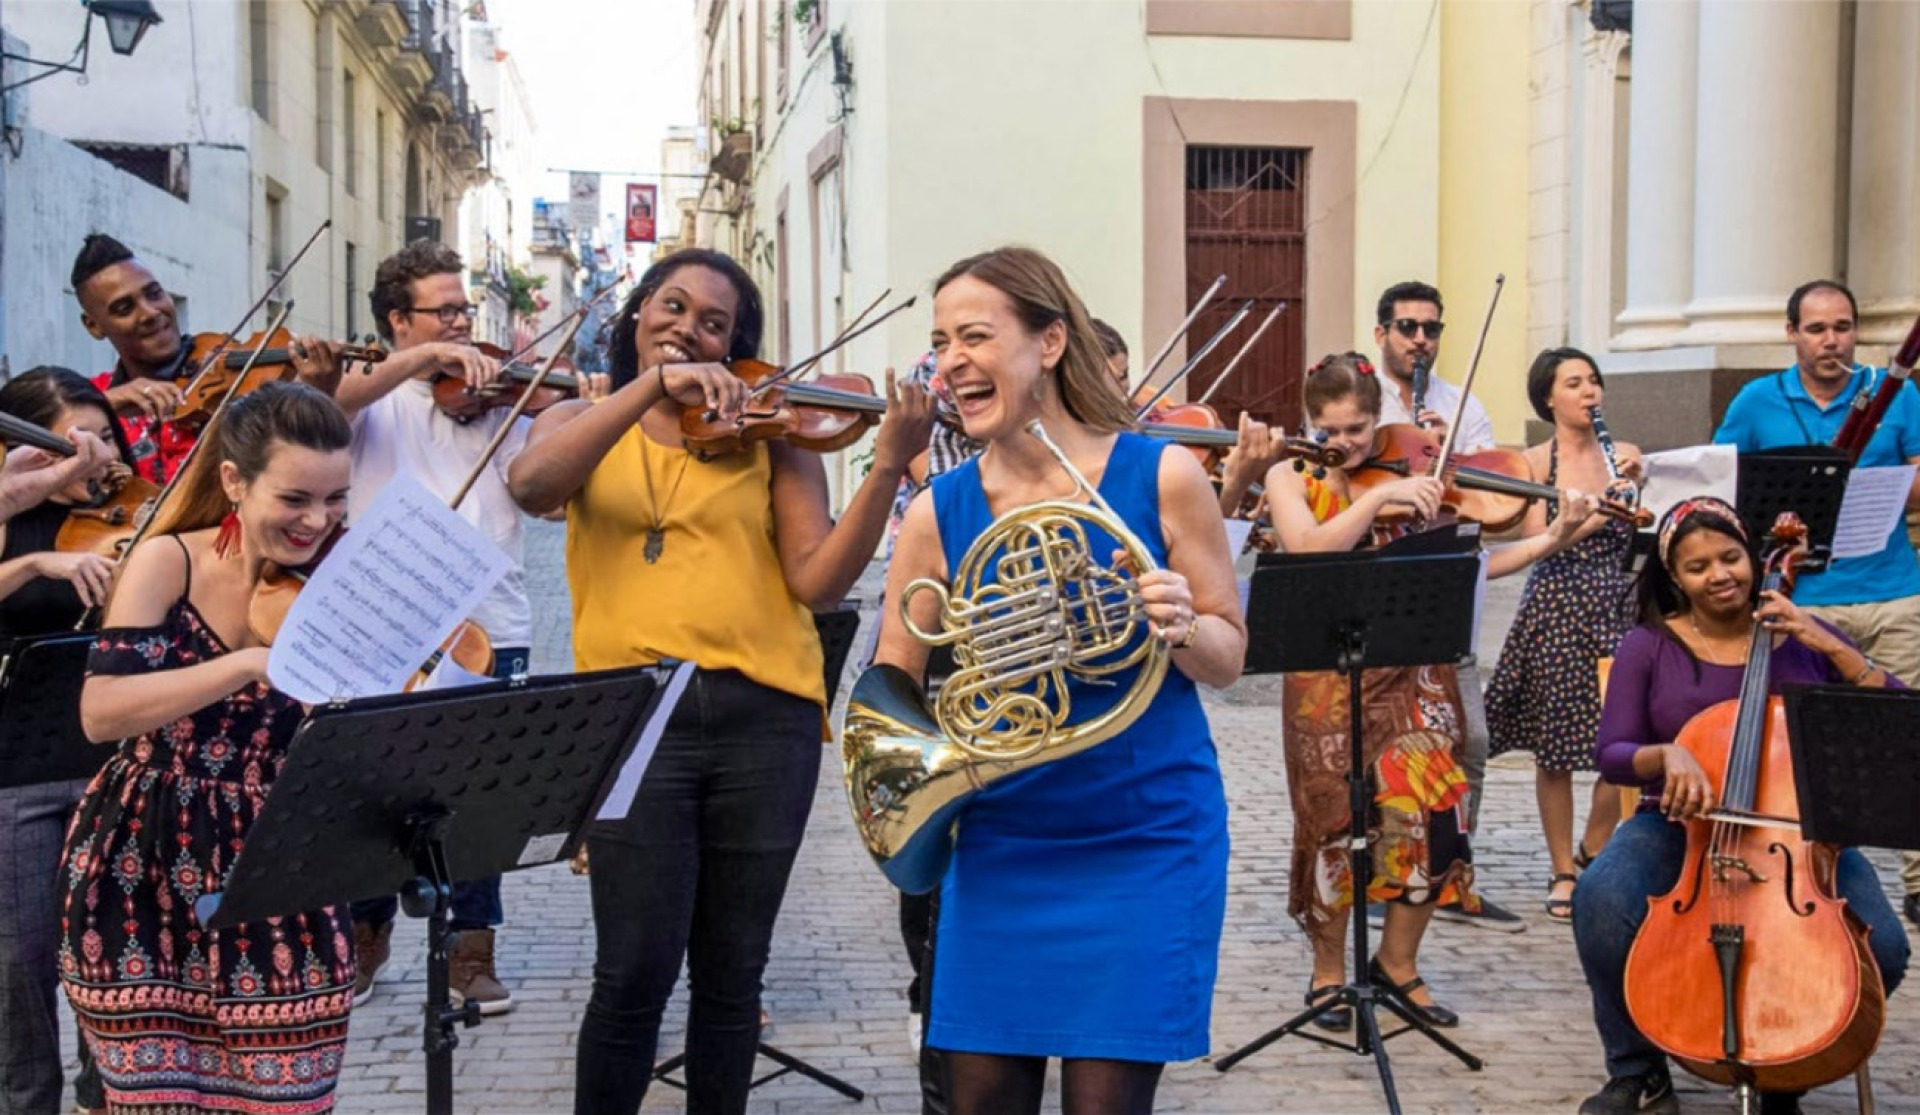 Die amerikanisch-britische Hornistin Sarah Willis entdeckte während eines Aufenthaltes in Havanna eine lebensgrosse Mozart-Statue. Daraus entstand ihr Projekt «Mozart y Mambo», mit dem sie durch die grossen europäischen Konzertsäle tourt. BILD: ZVG, MONIKA RITTERSHAUS